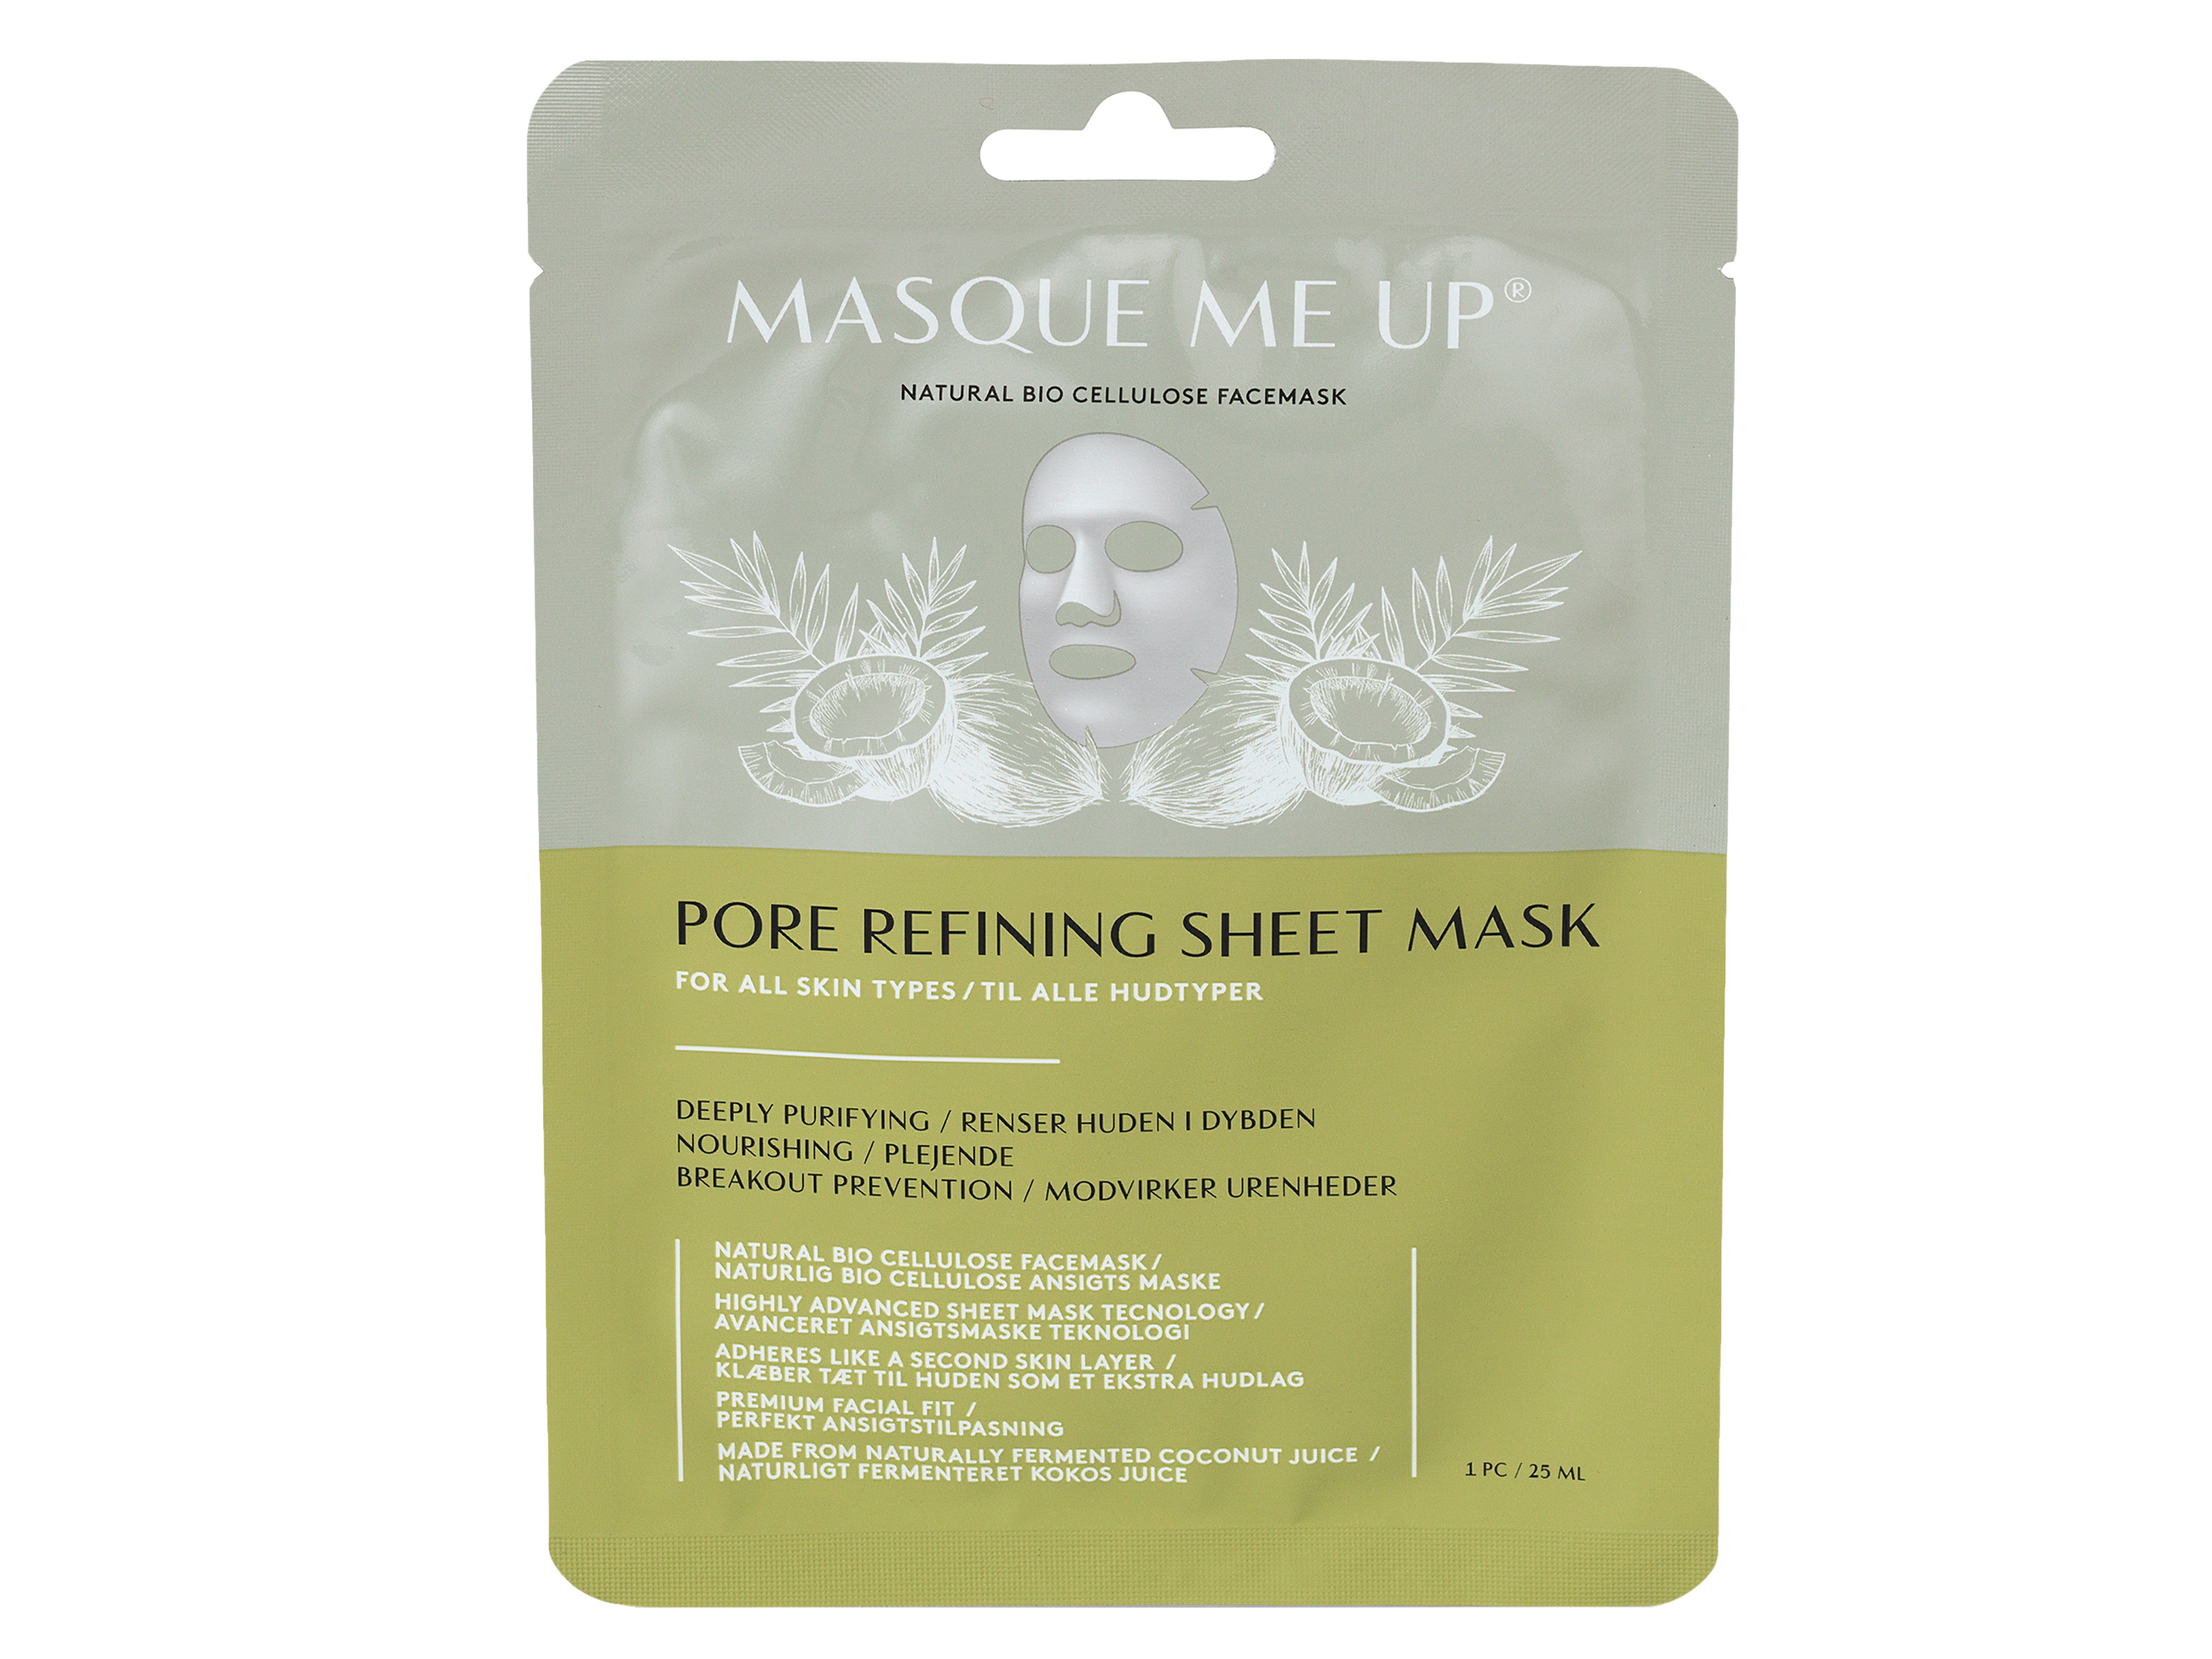 Masque Me Up Porerefining Sheet Mask, 25 ml